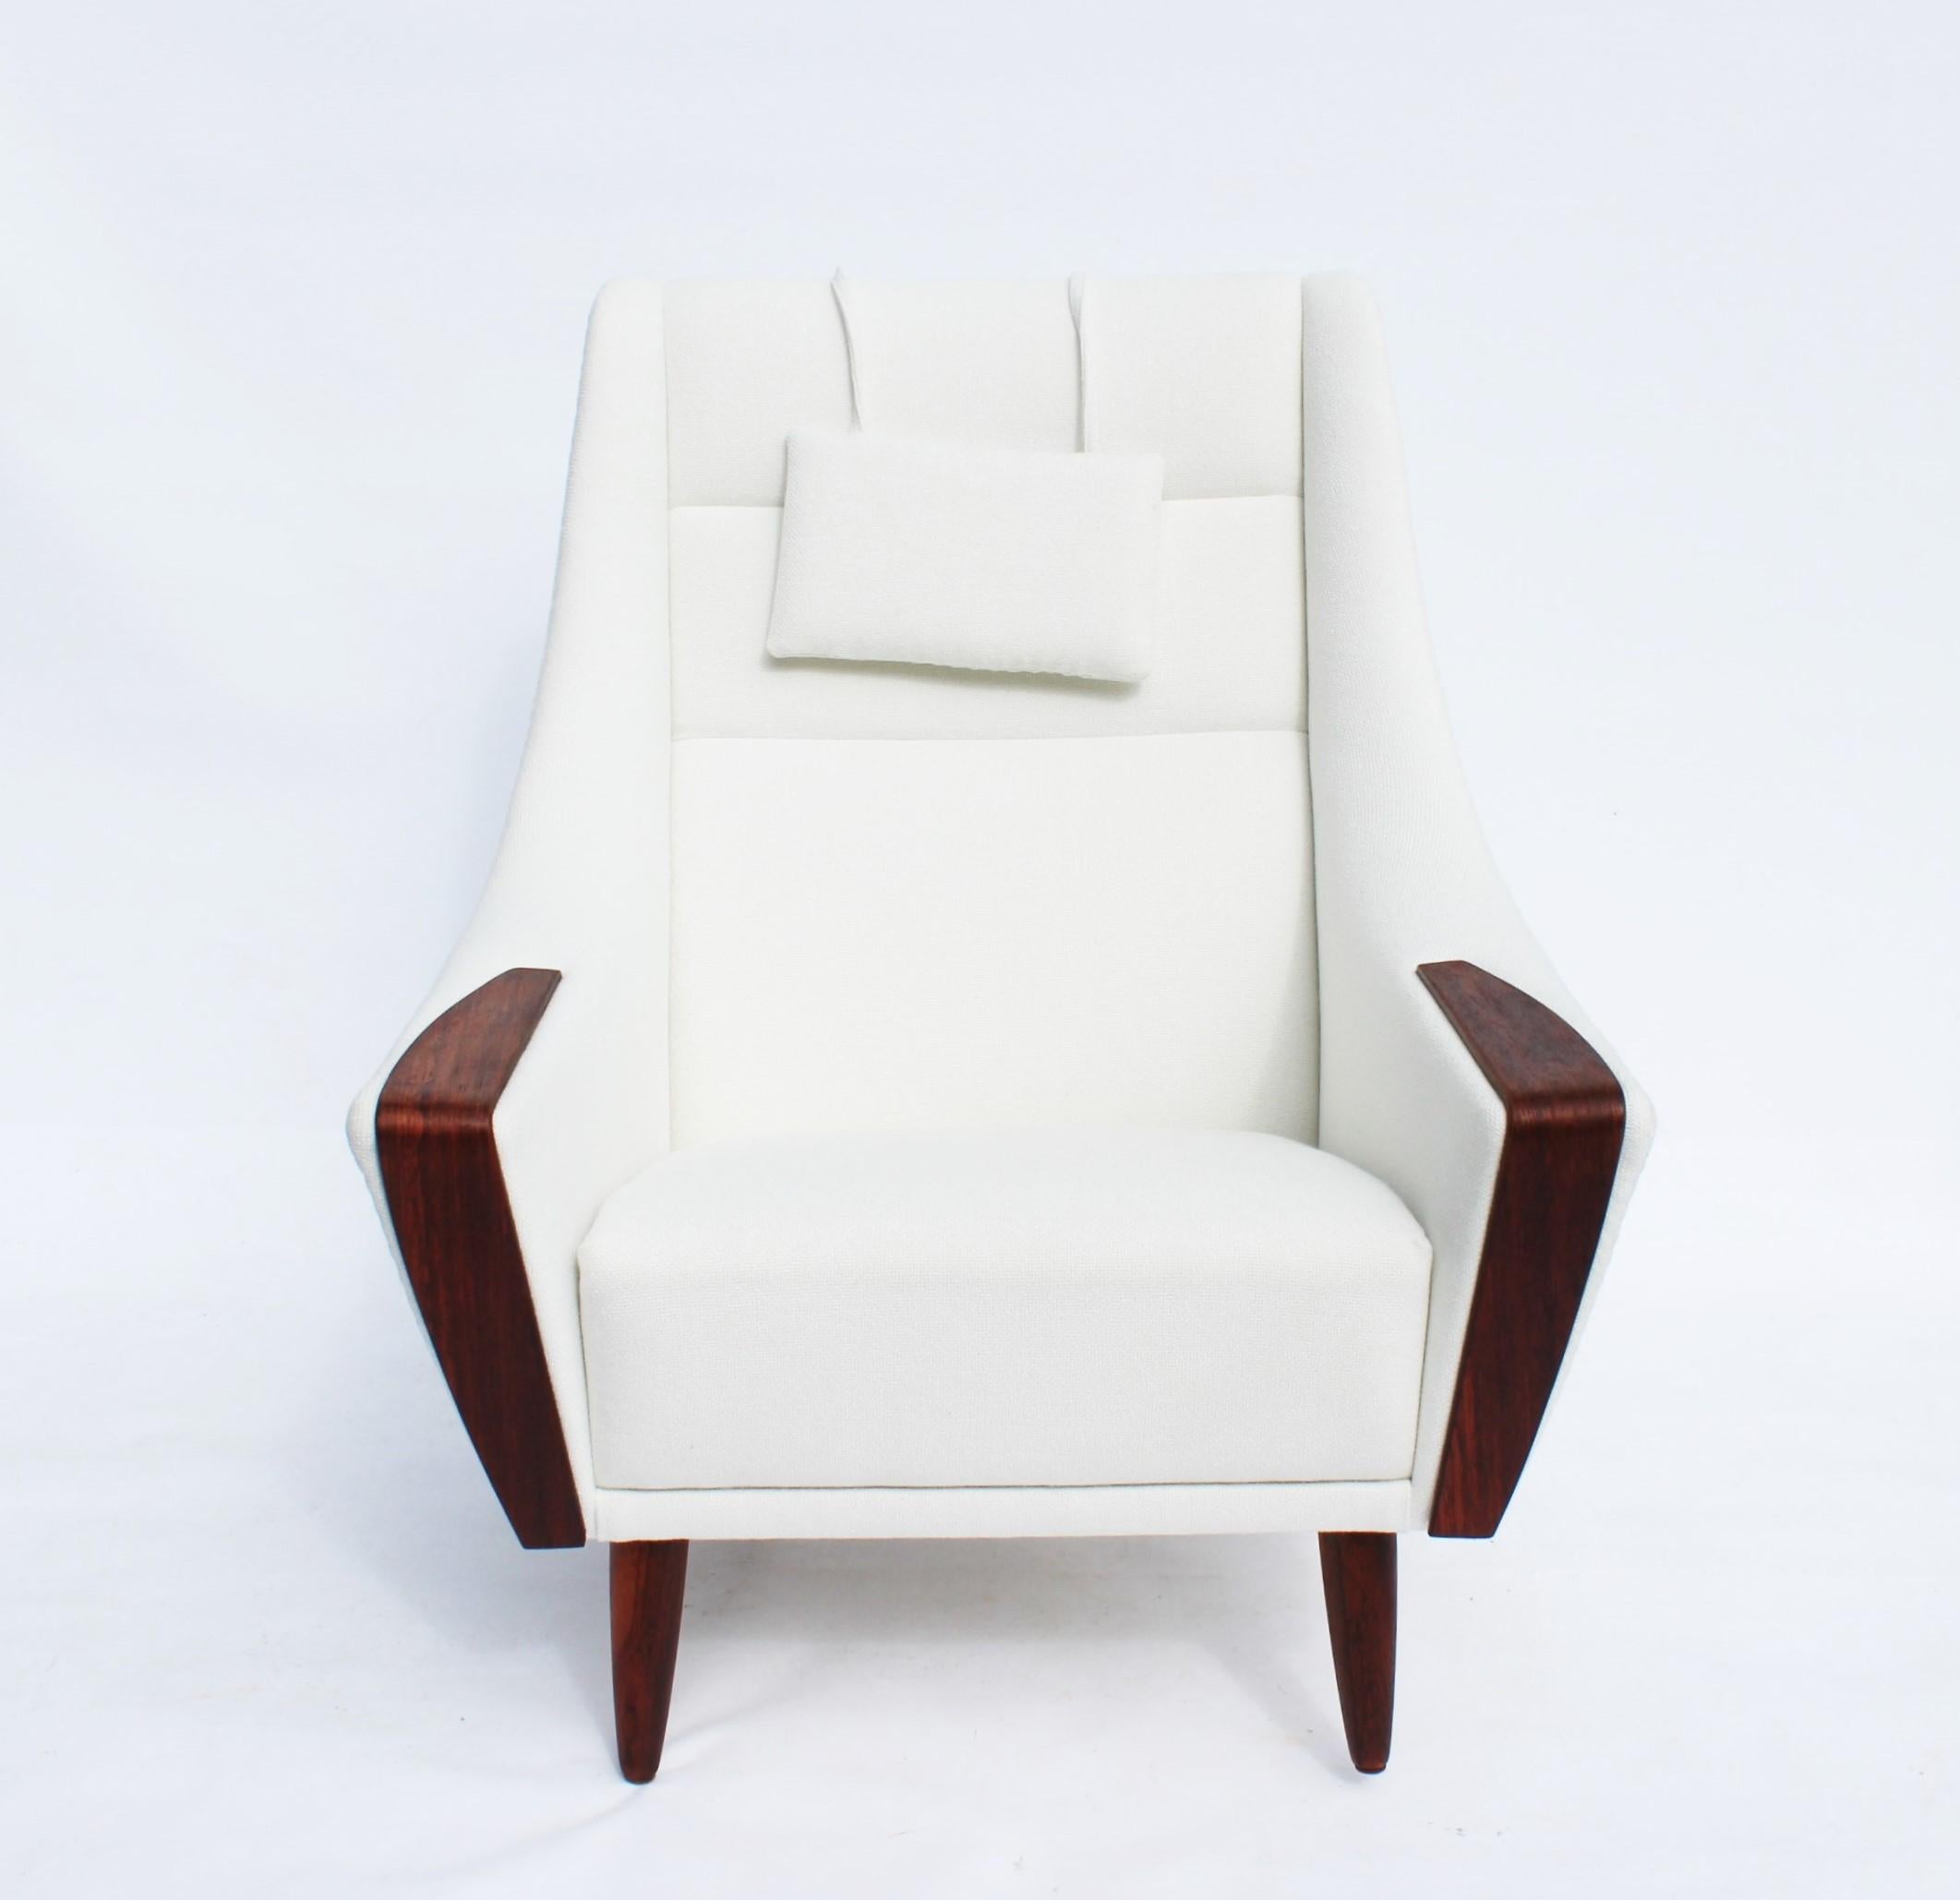 Le fauteuil à haut dossier, magnifiquement tapissé de tissu blanc et reposant élégamment sur des pieds en bois de rose, représente une pièce emblématique du design danois des années 1960. Méticuleusement restaurée et retapissée, cette chaise est